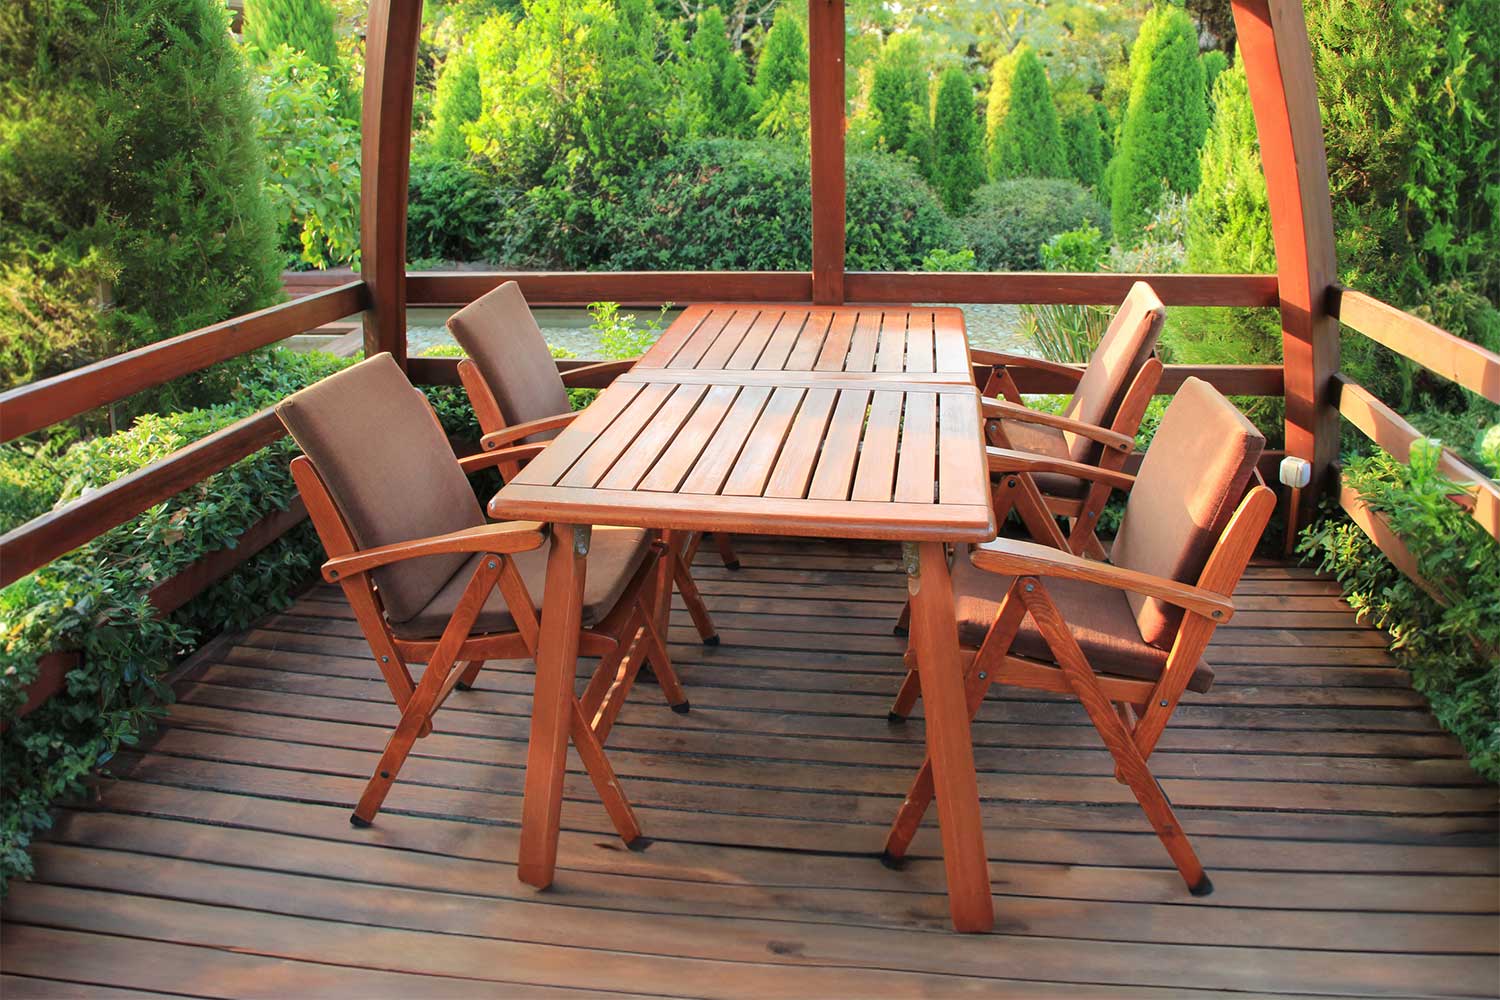 Outdoor wood furniture in Brisbane, Queensland